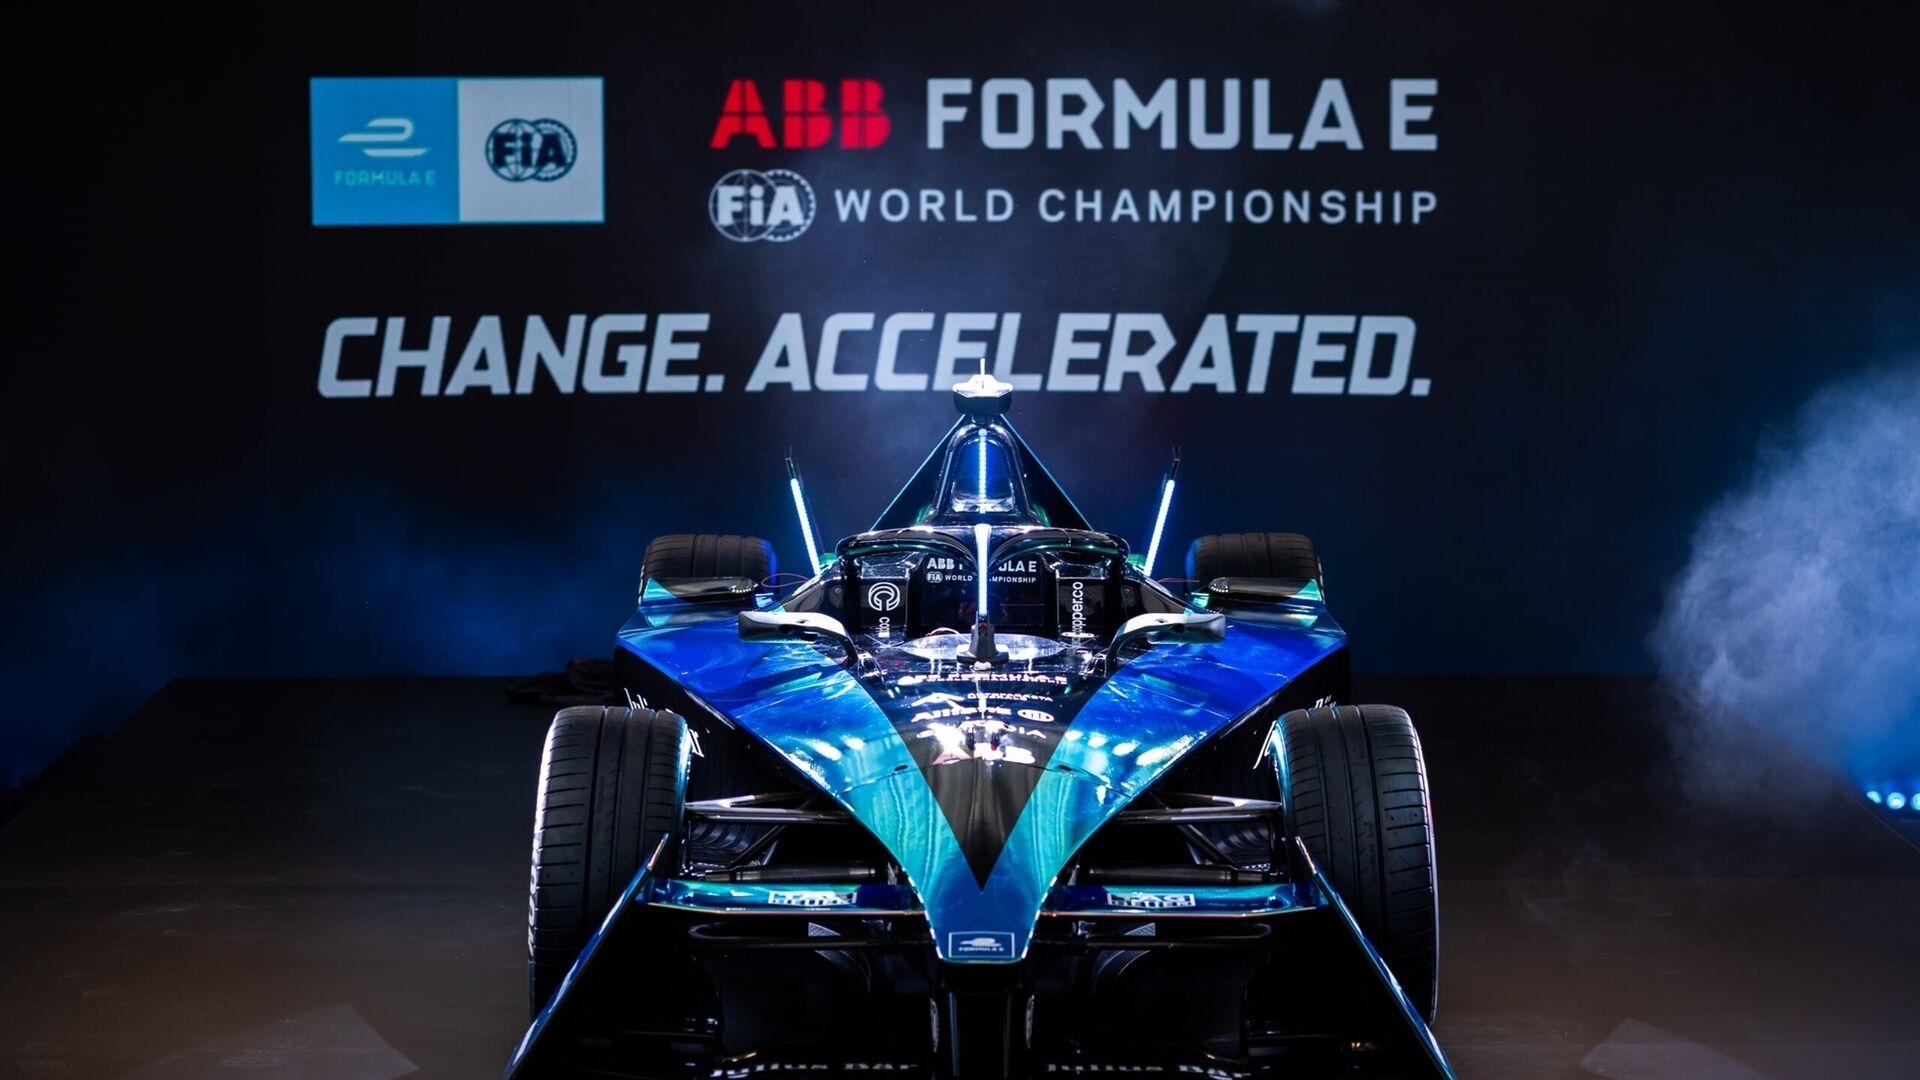 Gen3: Gen3 enseter er svært nyskapende og vil bli brukt fra og med den niende sesongen av FIA ABB Formel E World Championship: kvadrering av sirkelen mellom ytelse og bærekraft